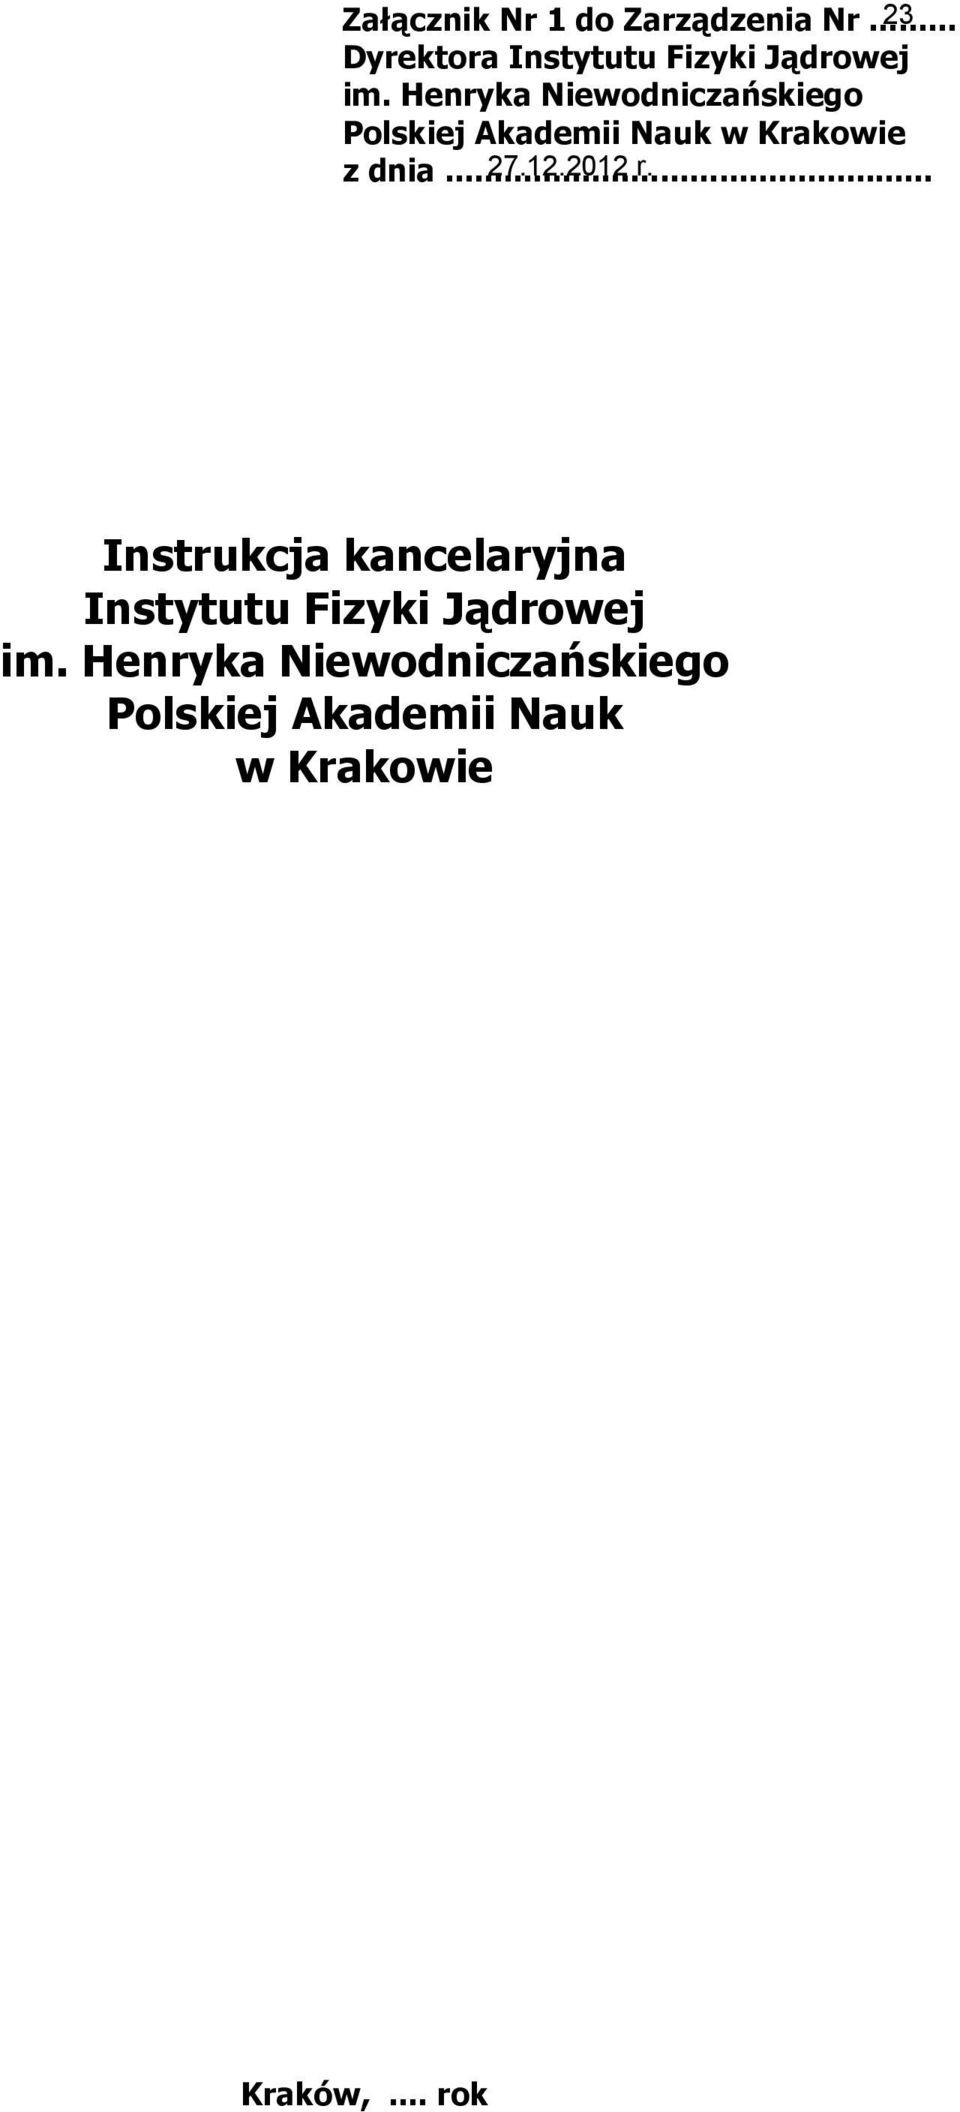 Henryka Niewodniczańskiego Polskiej Akademii Nauk w Krakowie z dnia.